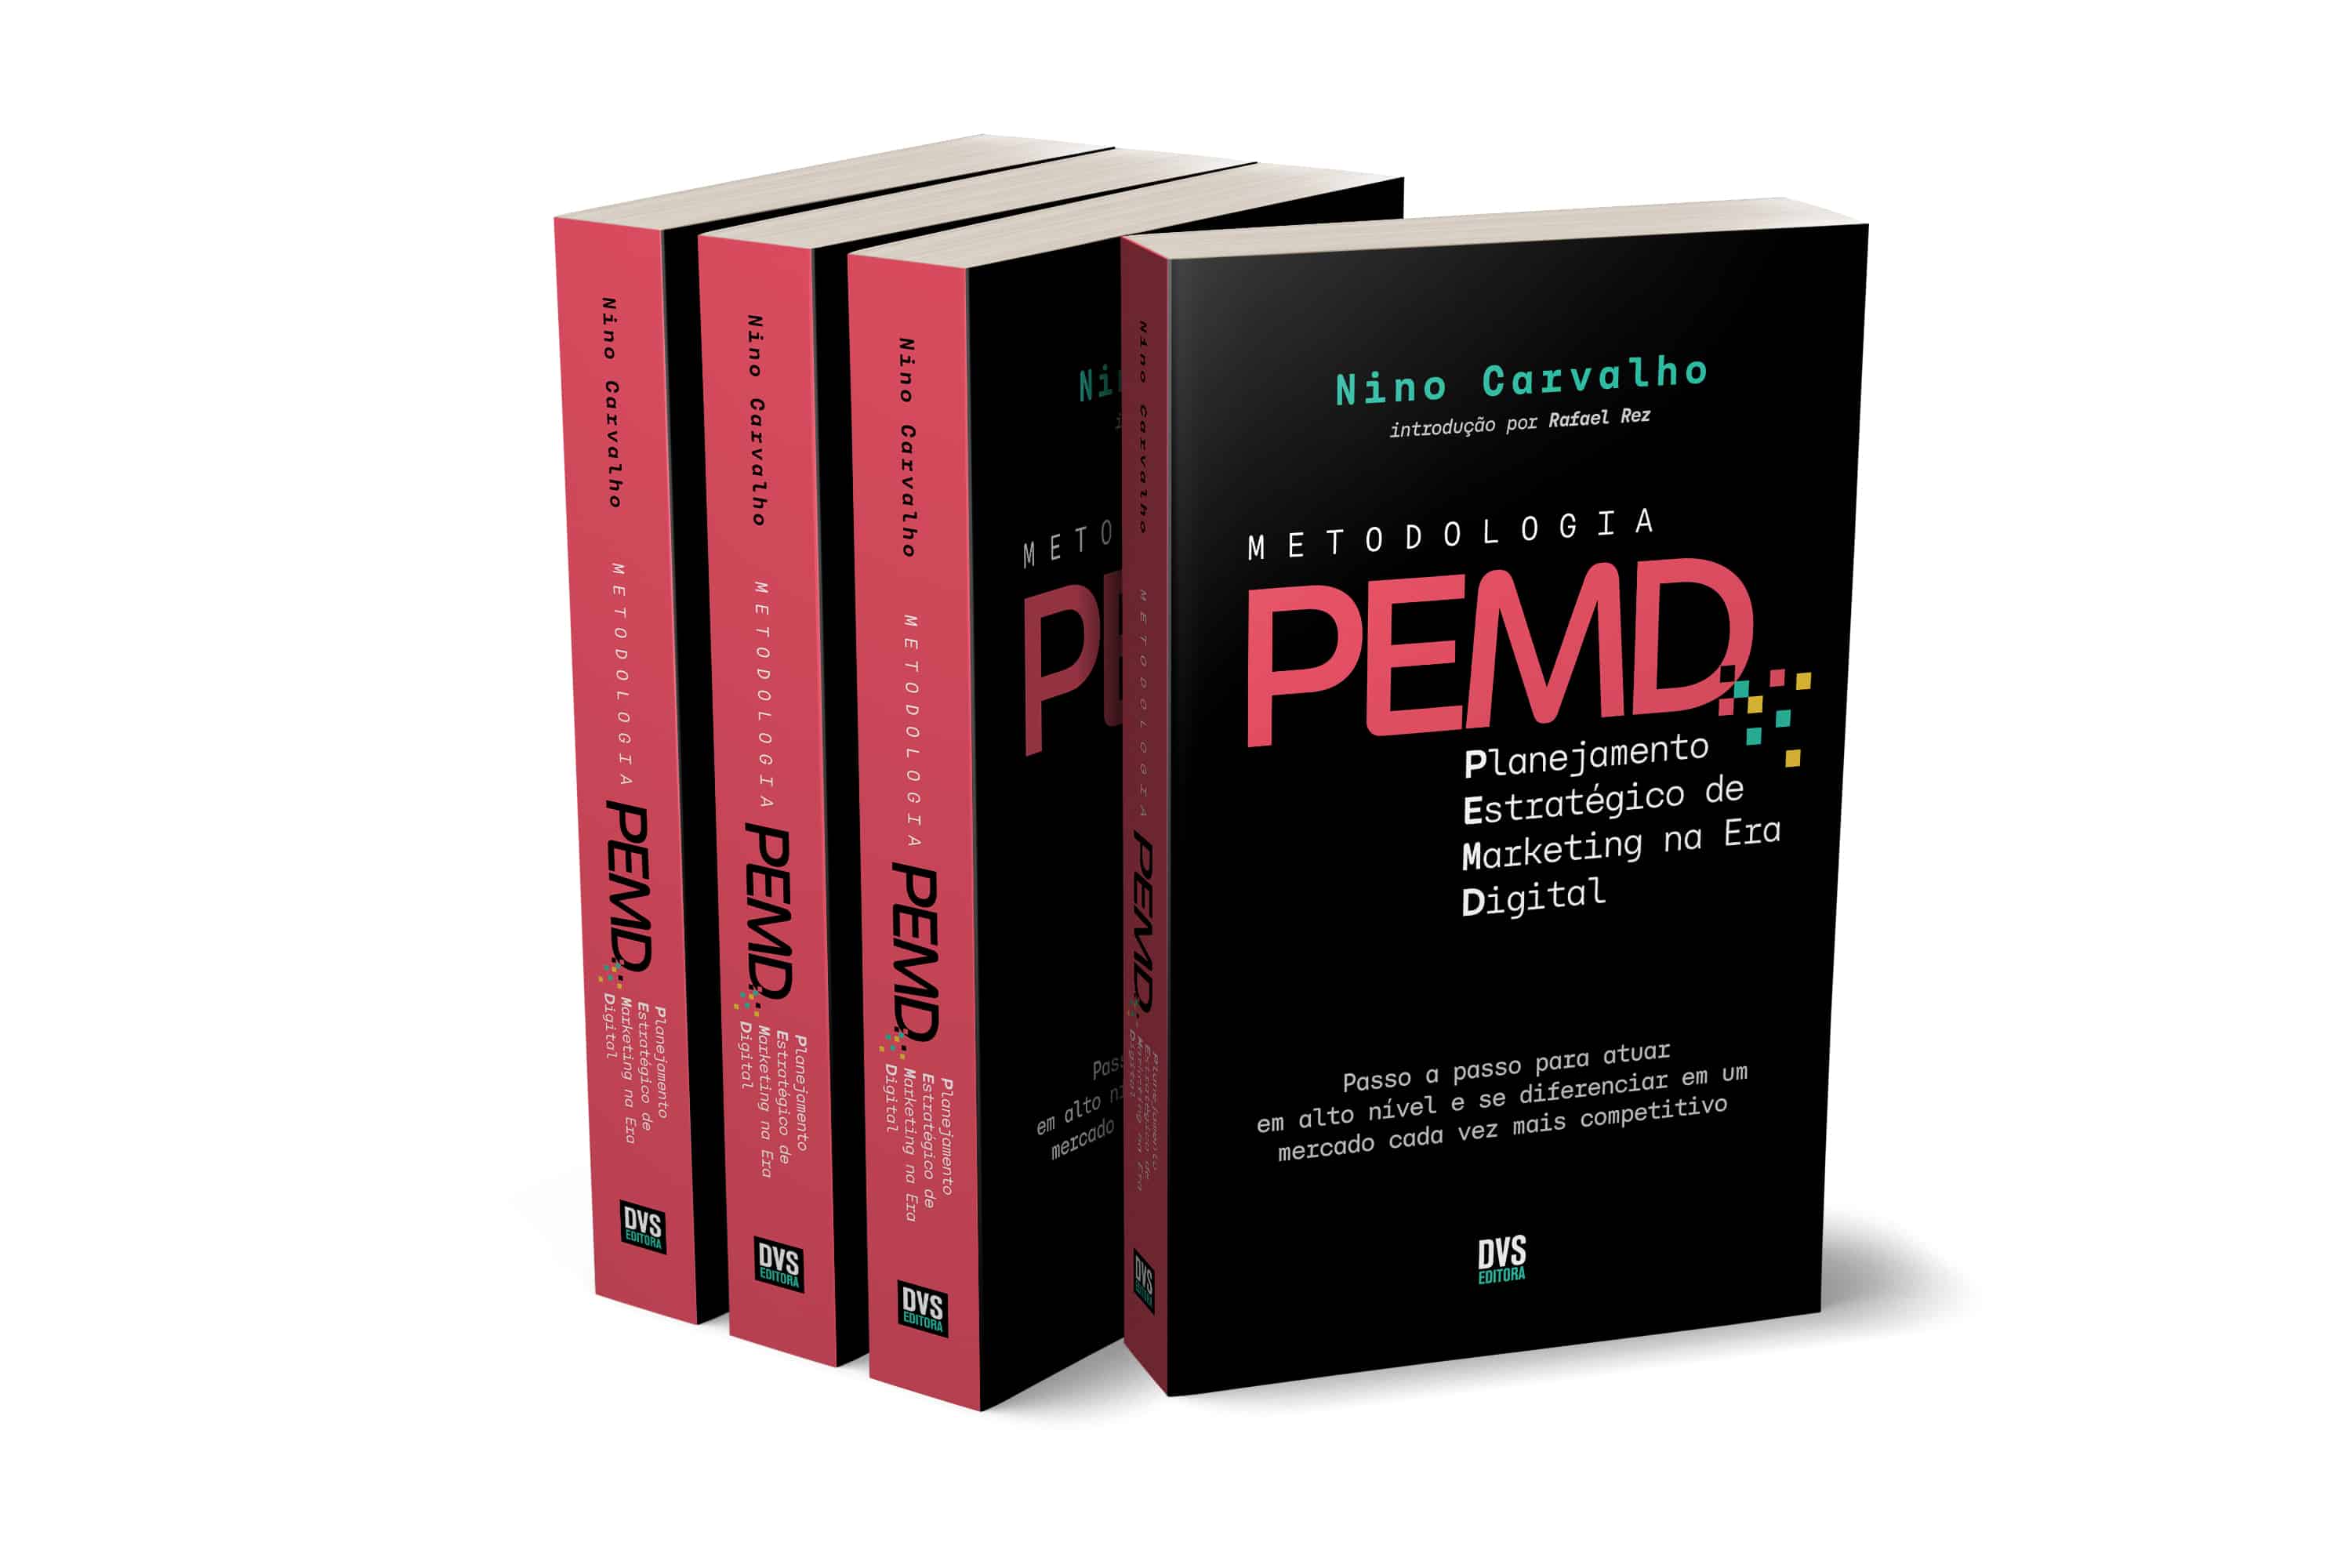 Você está visualizando atualmente Livro Metodologia PEMD: Planejamento Estratégico de Marketing na Era Digital